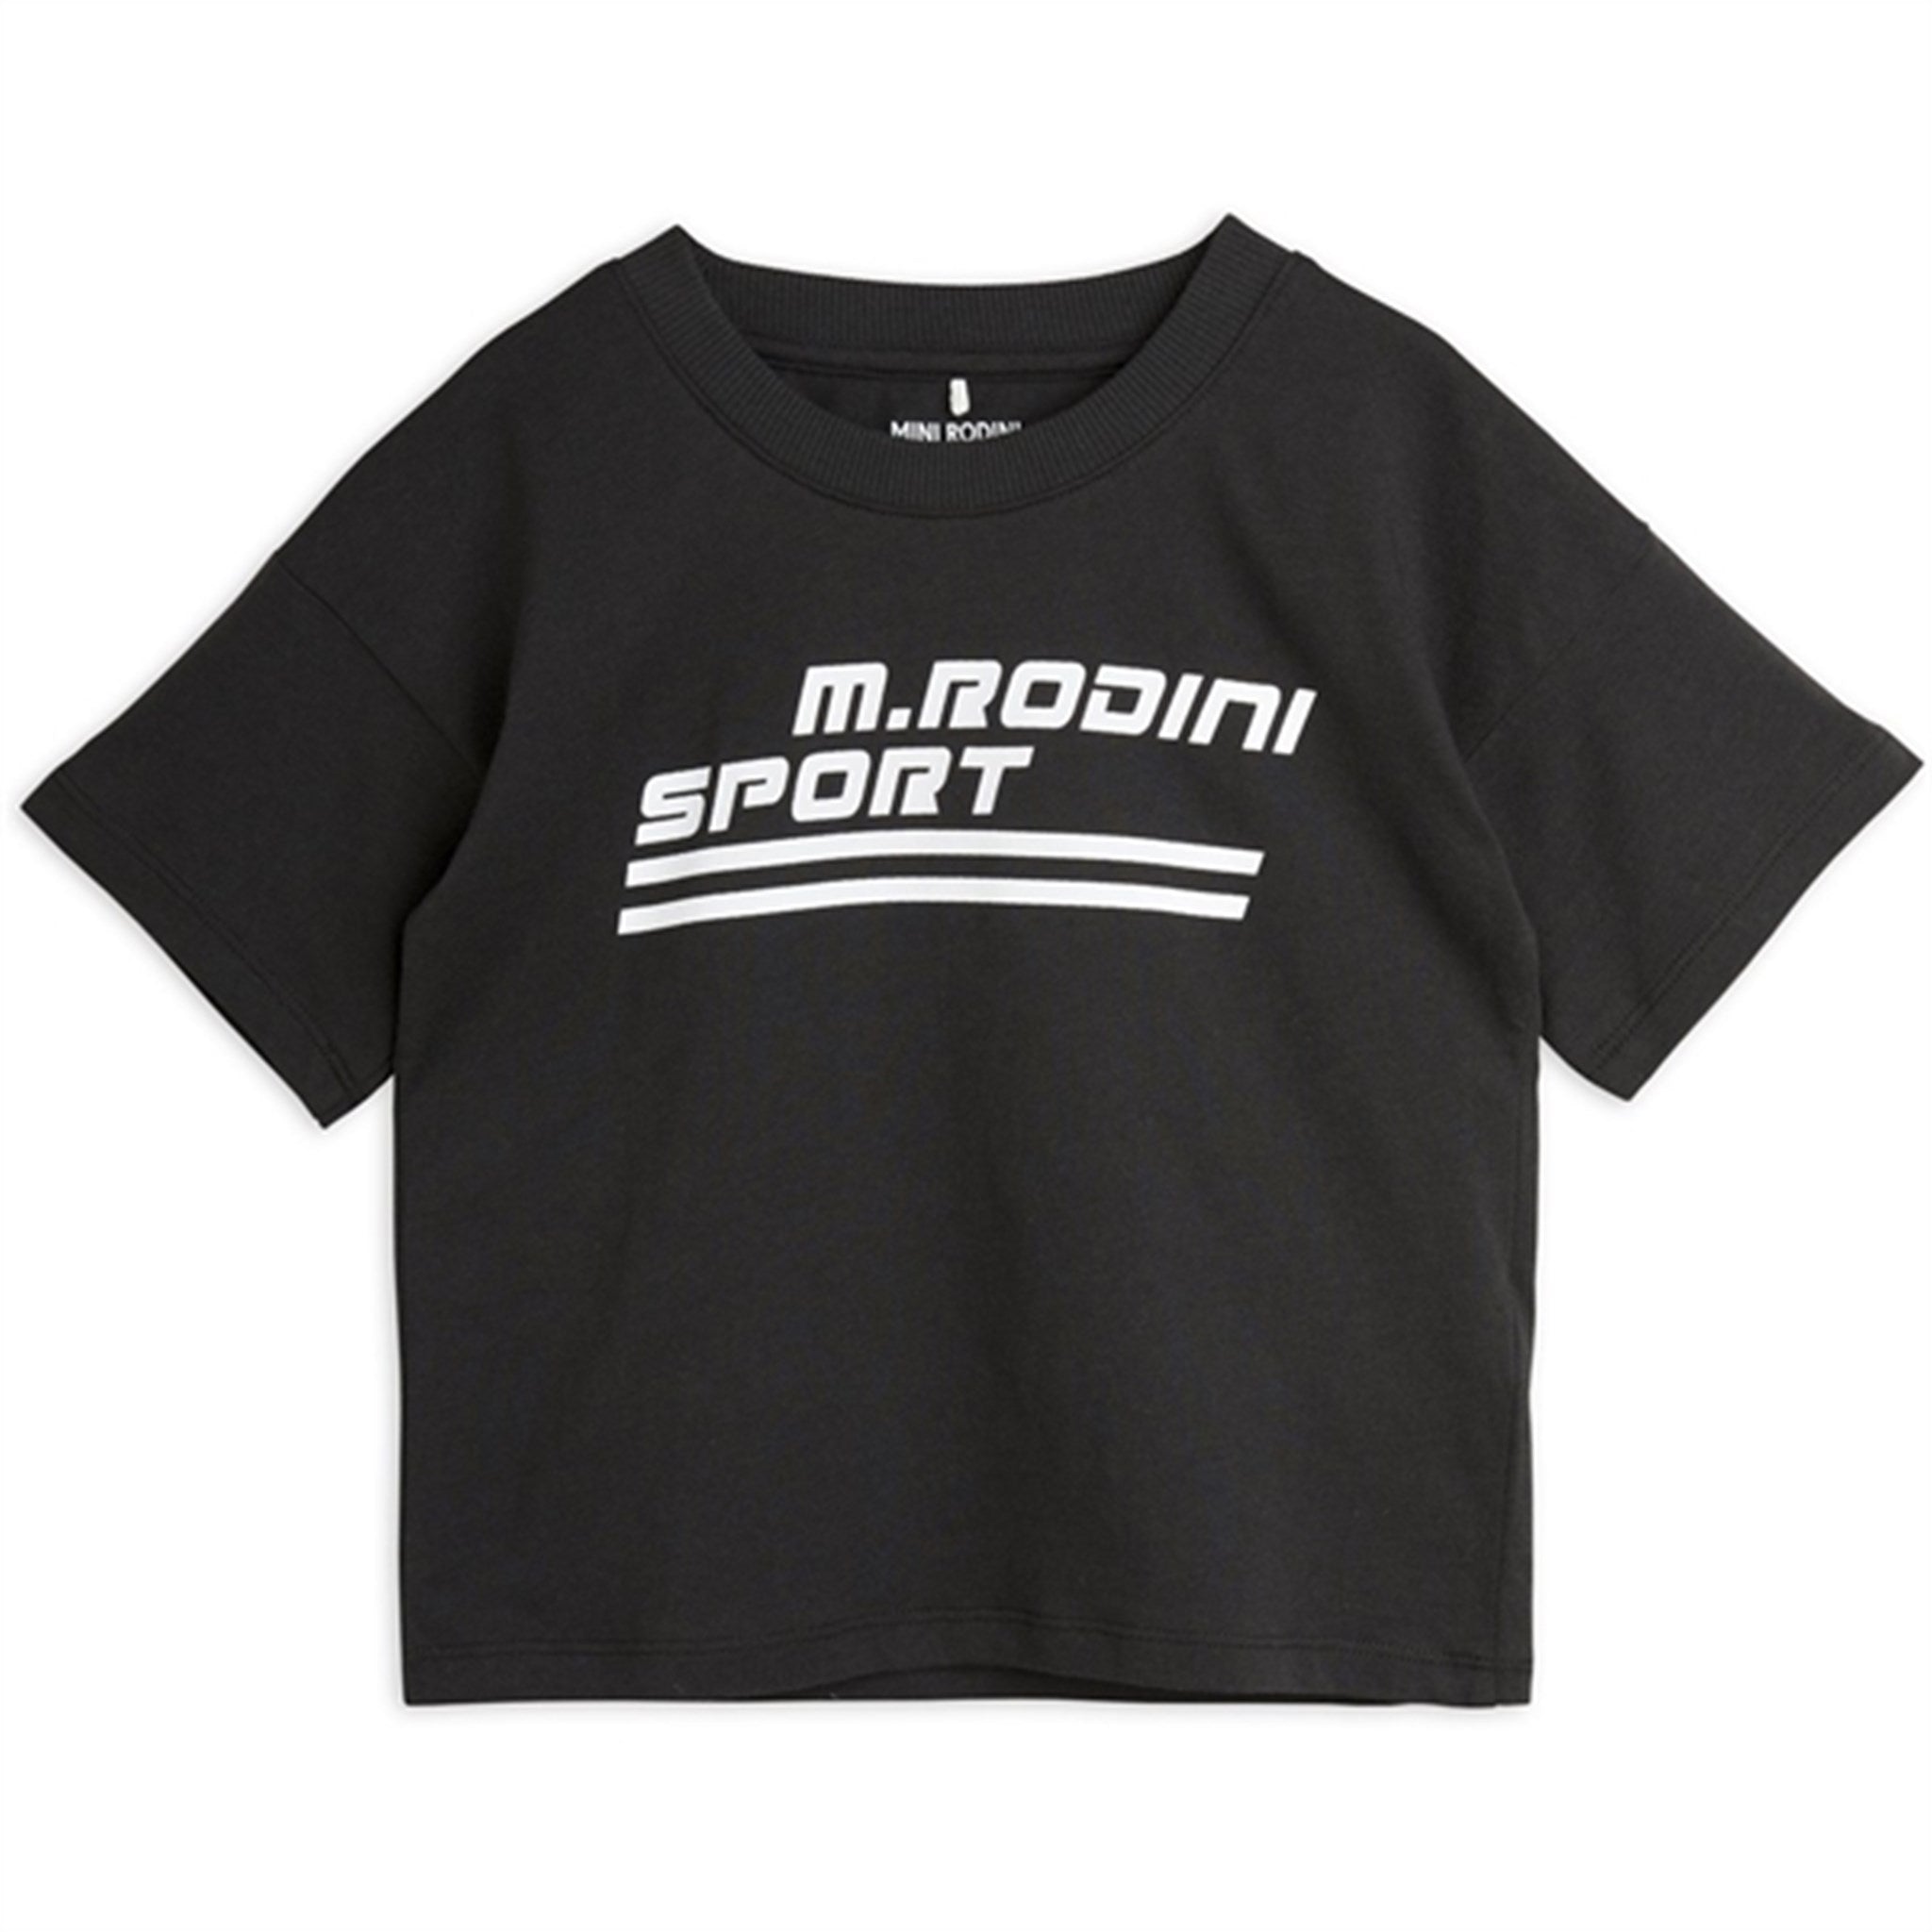 Mini Rodini Black M Rodini Sport Sp T-shirt